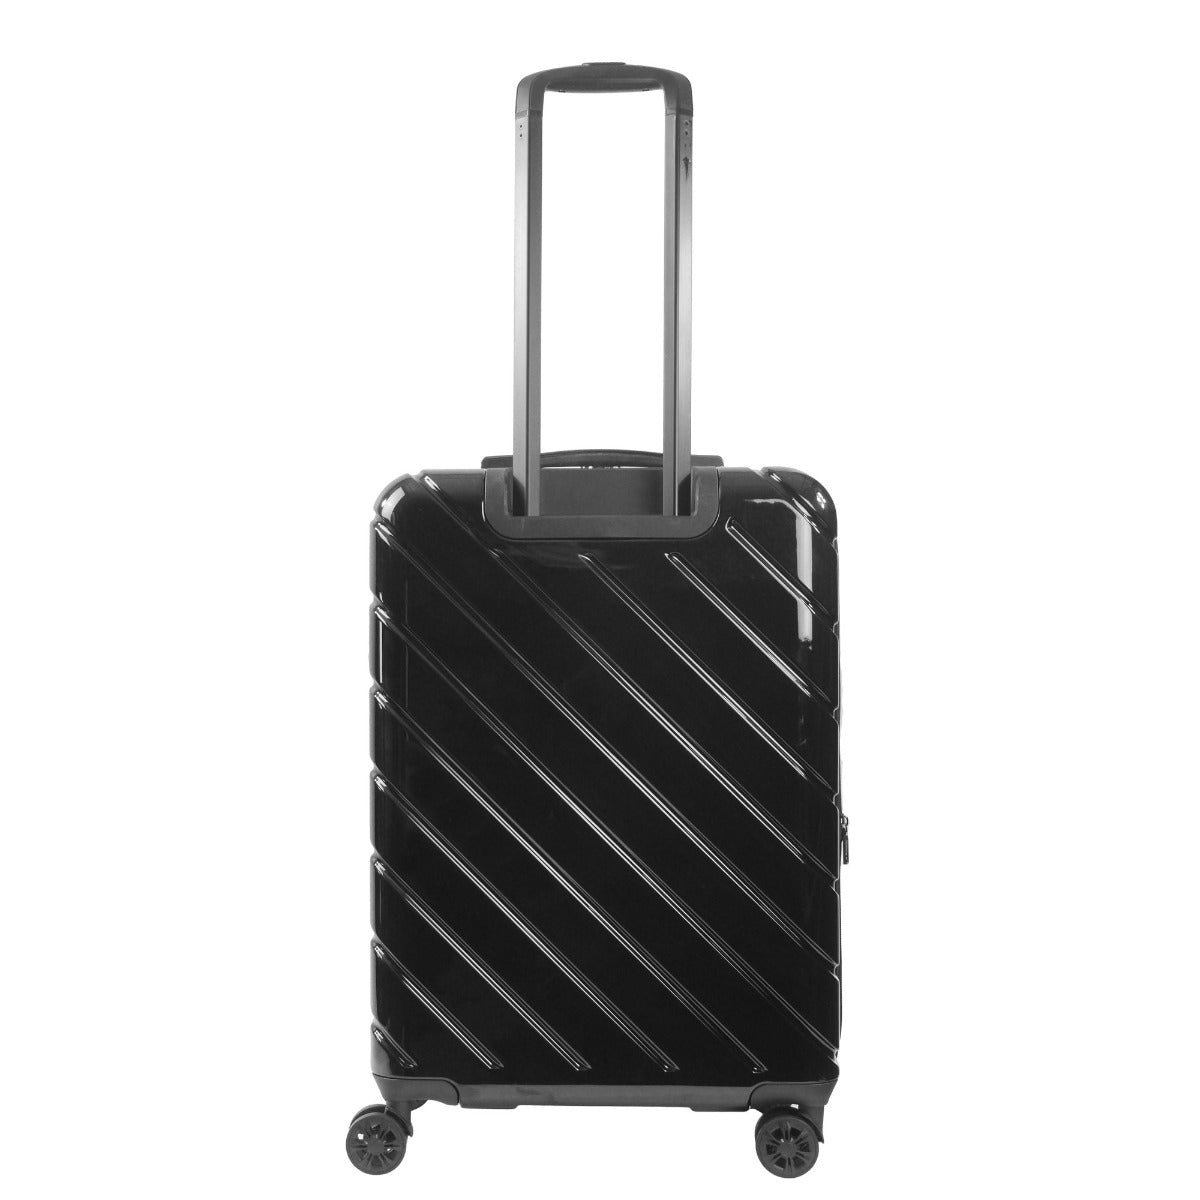 Velocity 27" hardside spinner suitcase black checked luggage